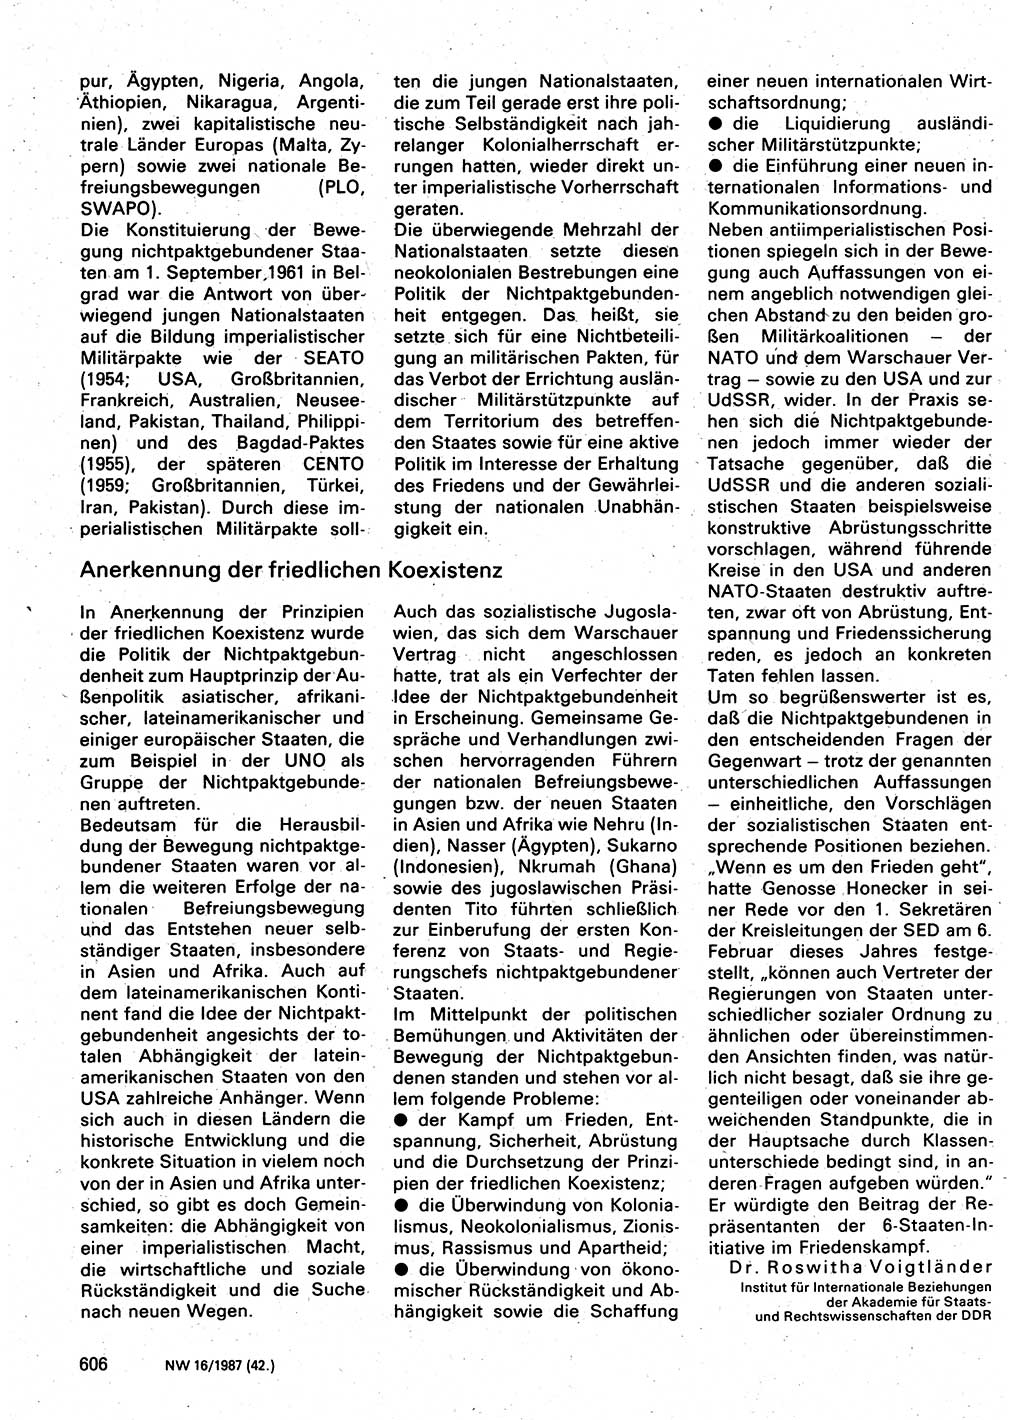 Neuer Weg (NW), Organ des Zentralkomitees (ZK) der SED (Sozialistische Einheitspartei Deutschlands) für Fragen des Parteilebens, 42. Jahrgang [Deutsche Demokratische Republik (DDR)] 1987, Seite 606 (NW ZK SED DDR 1987, S. 606)